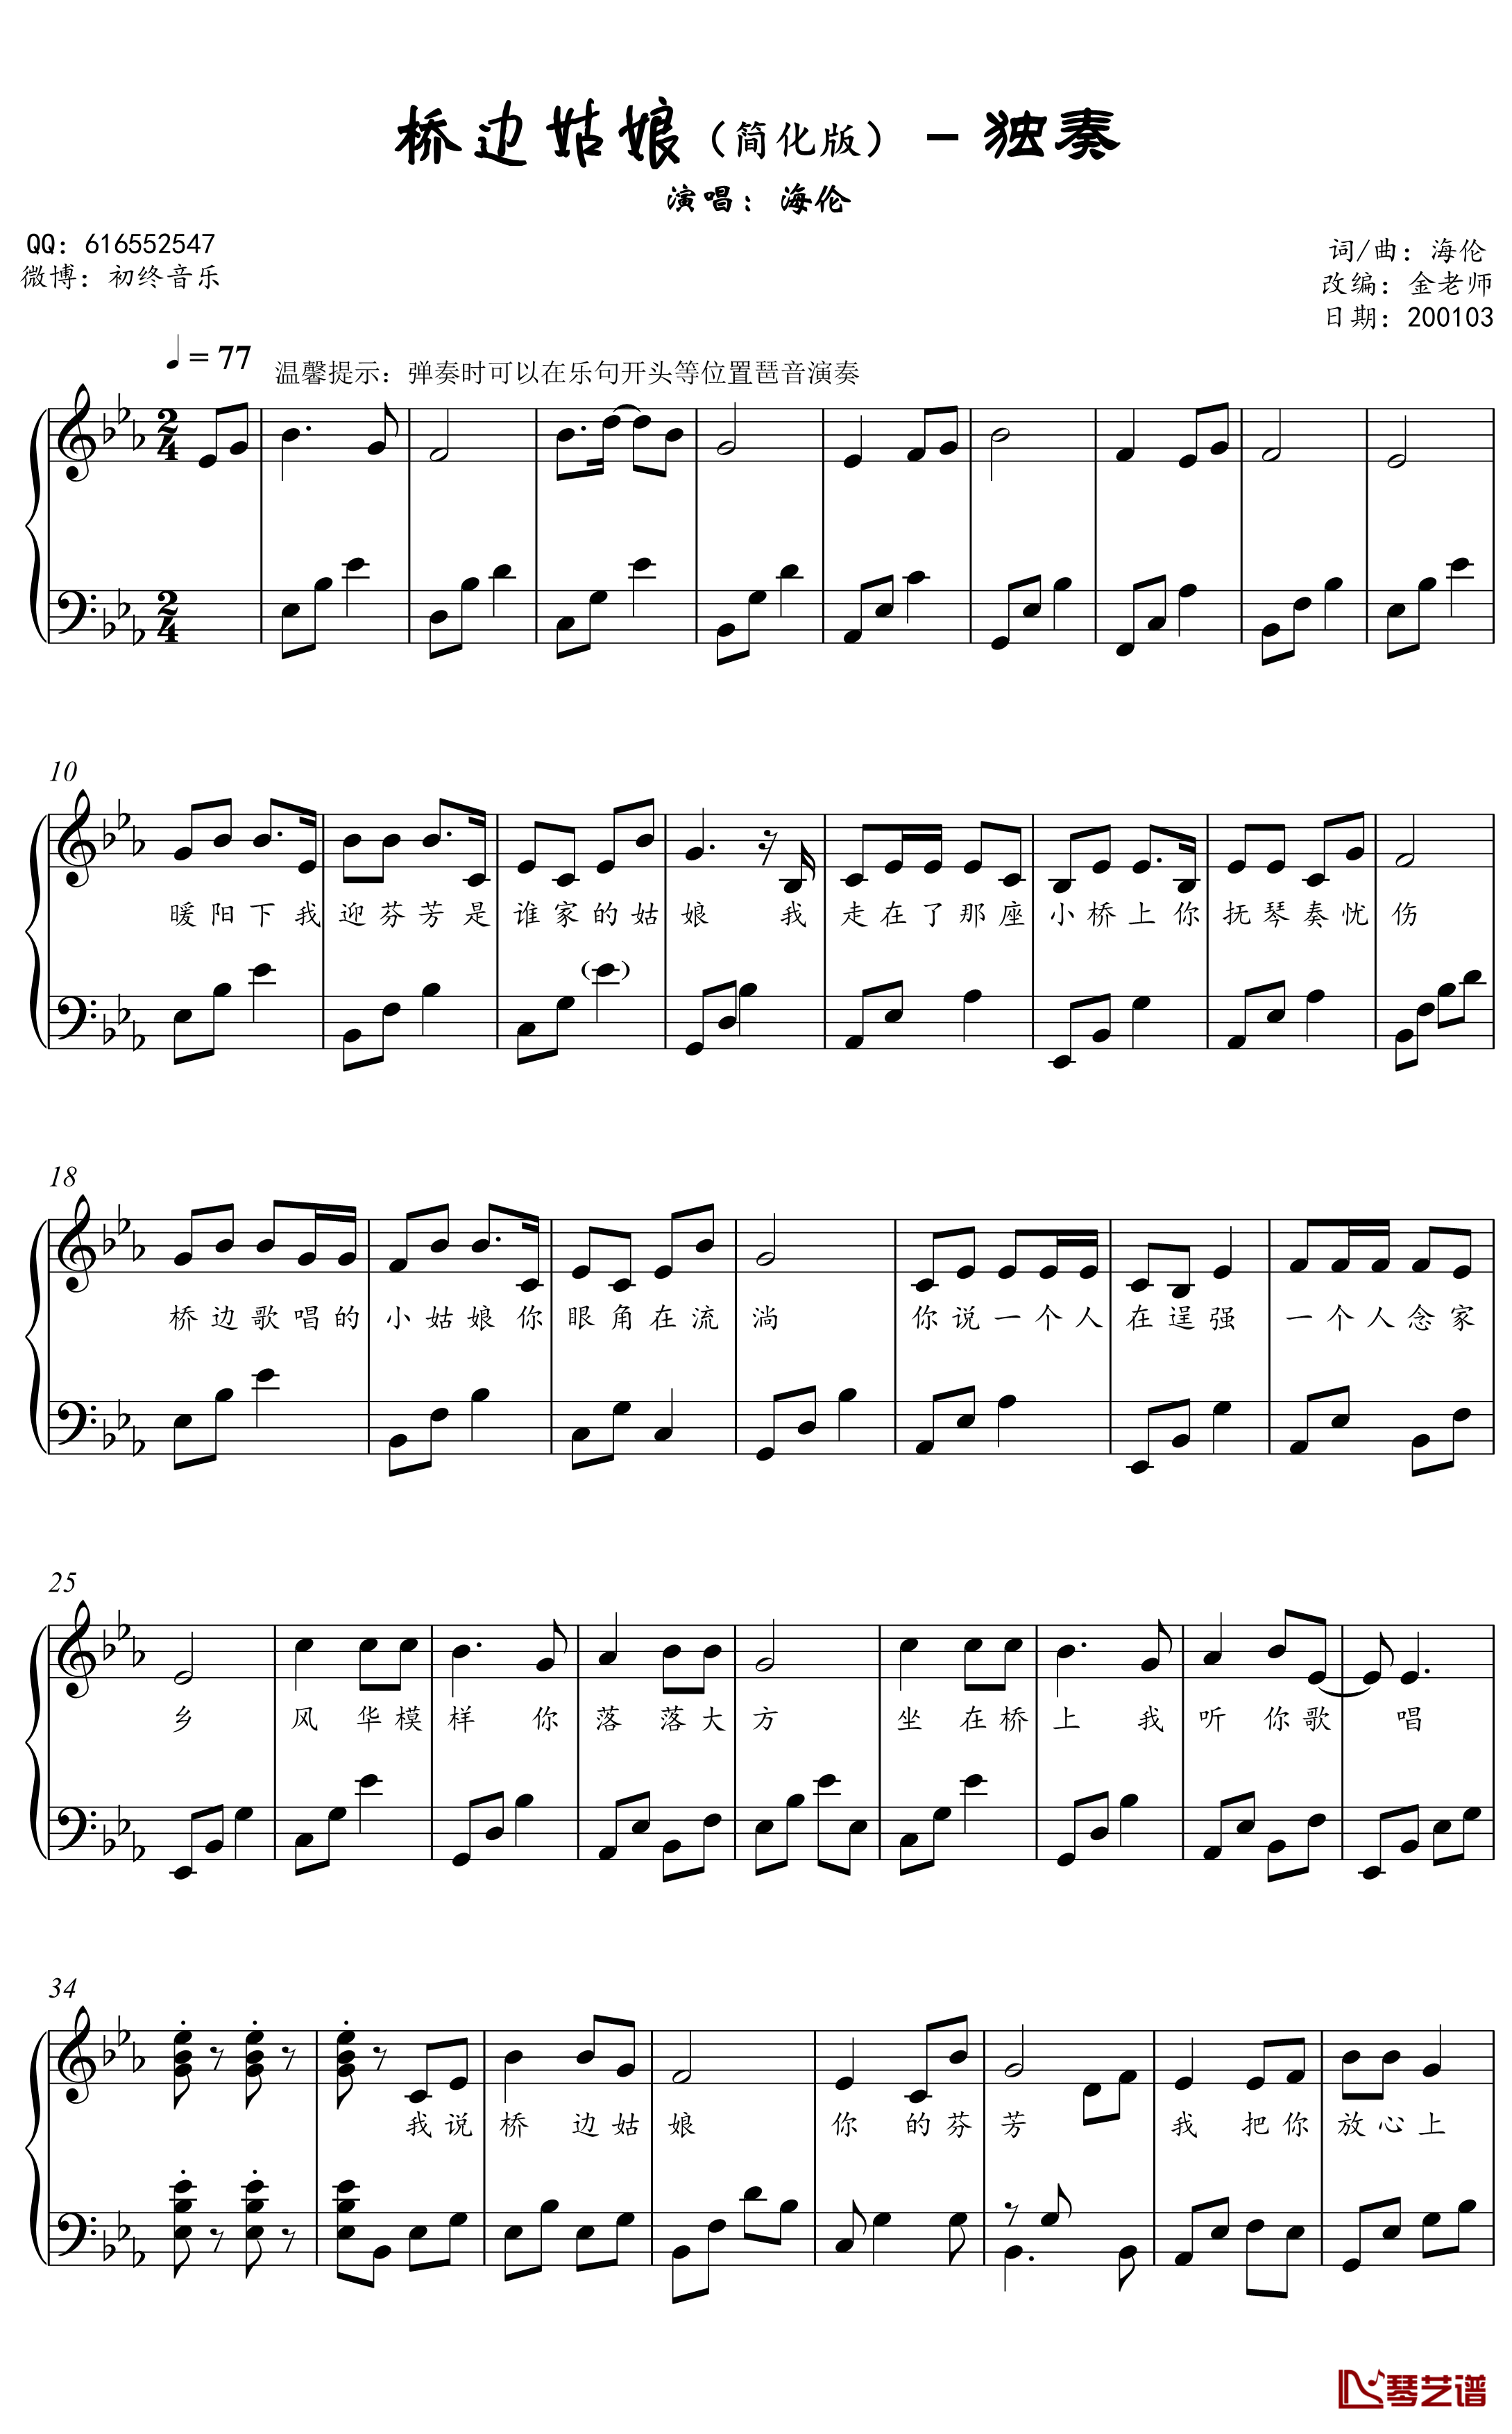 桥边姑娘钢琴谱 简化独奏谱2001032